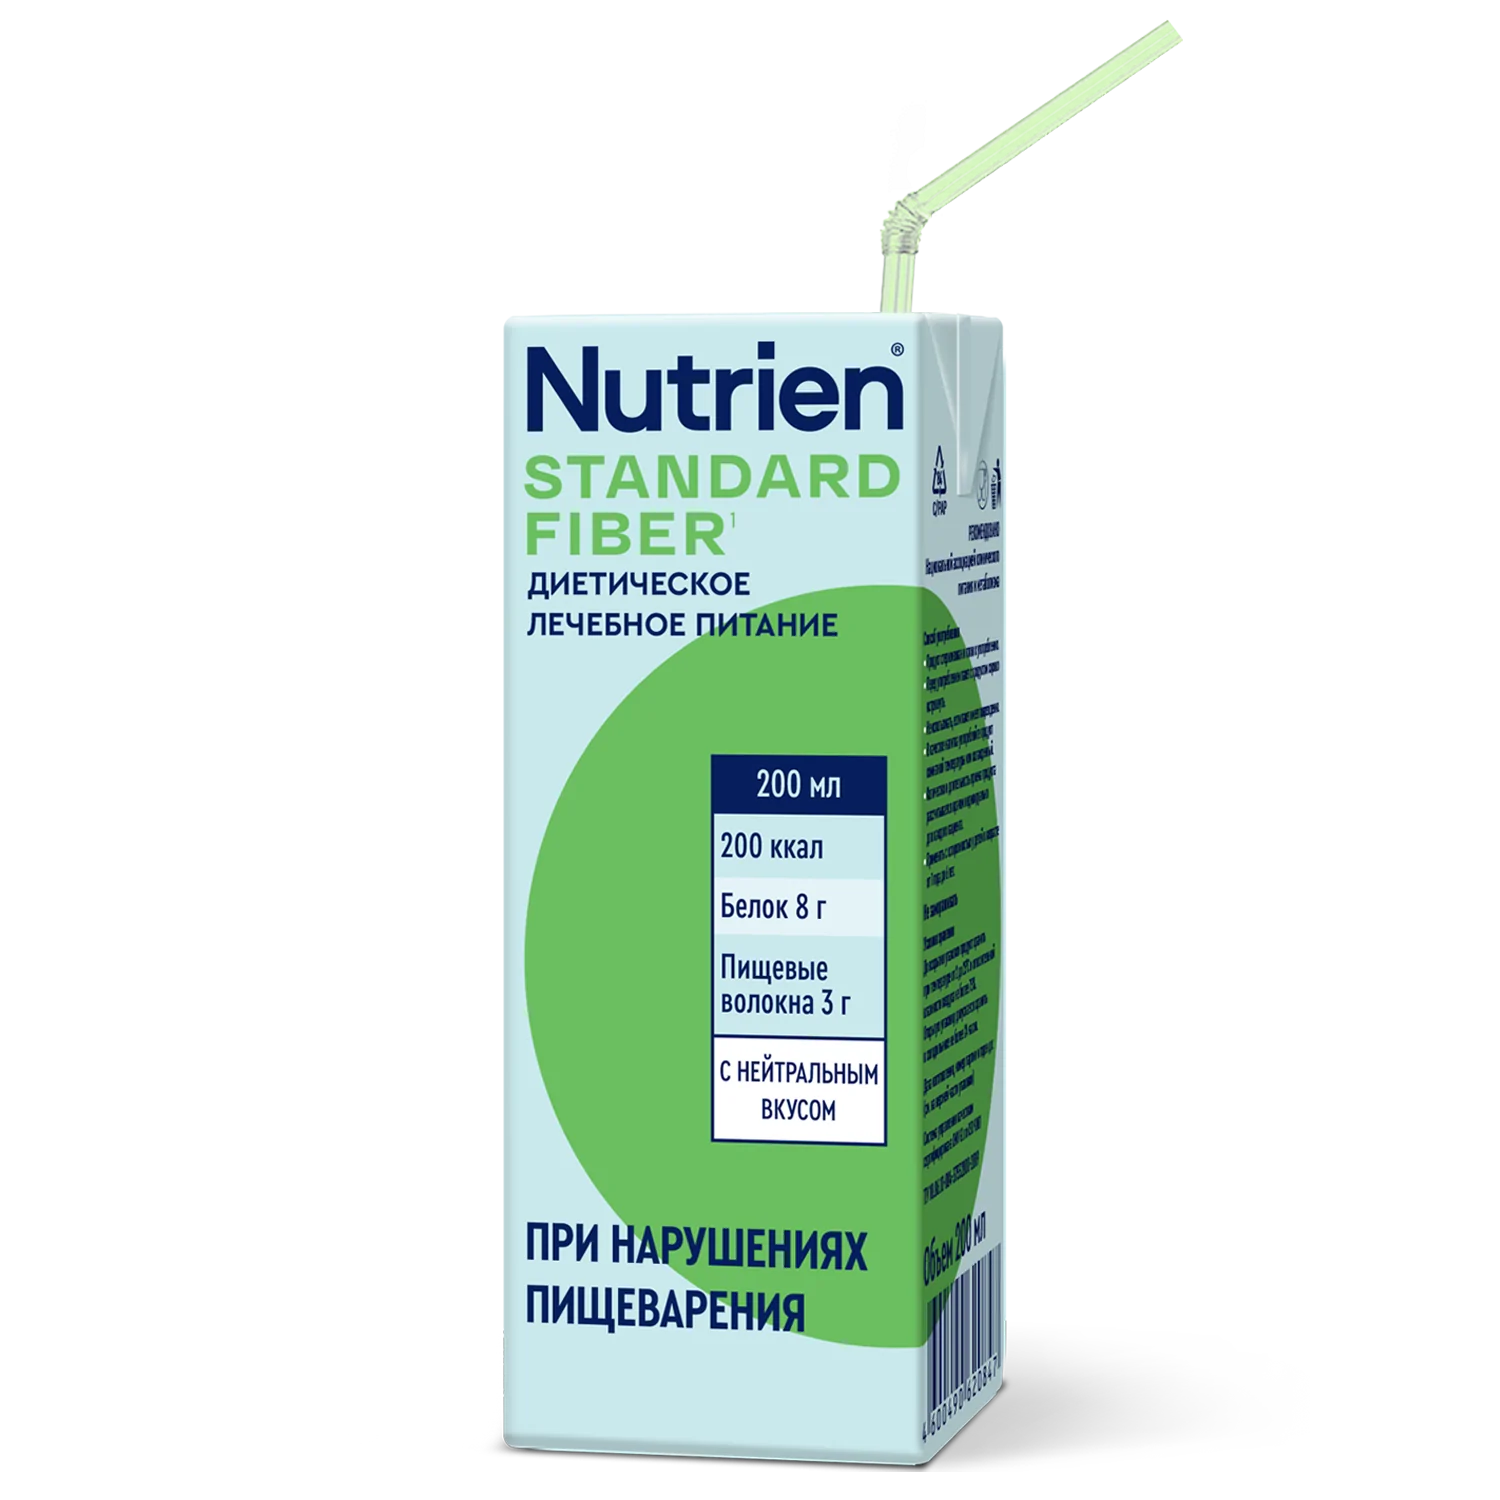 Nutrien Standard Fiber - 5